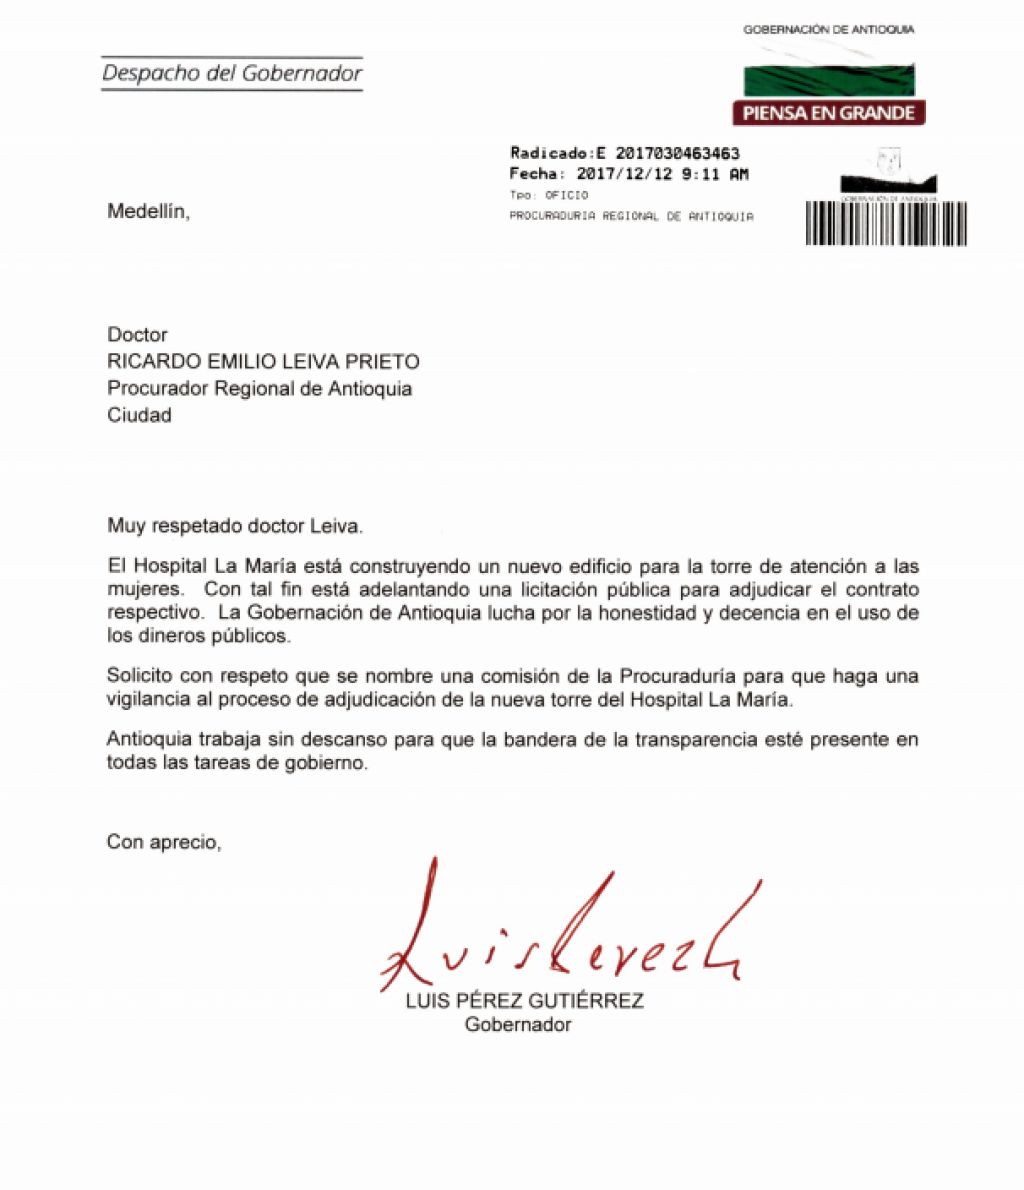 Carta del Gobernador de Antioquia al Procurador Regional solicitando vigilancia al proceso de contratación de la nueva torre del Hospital La María